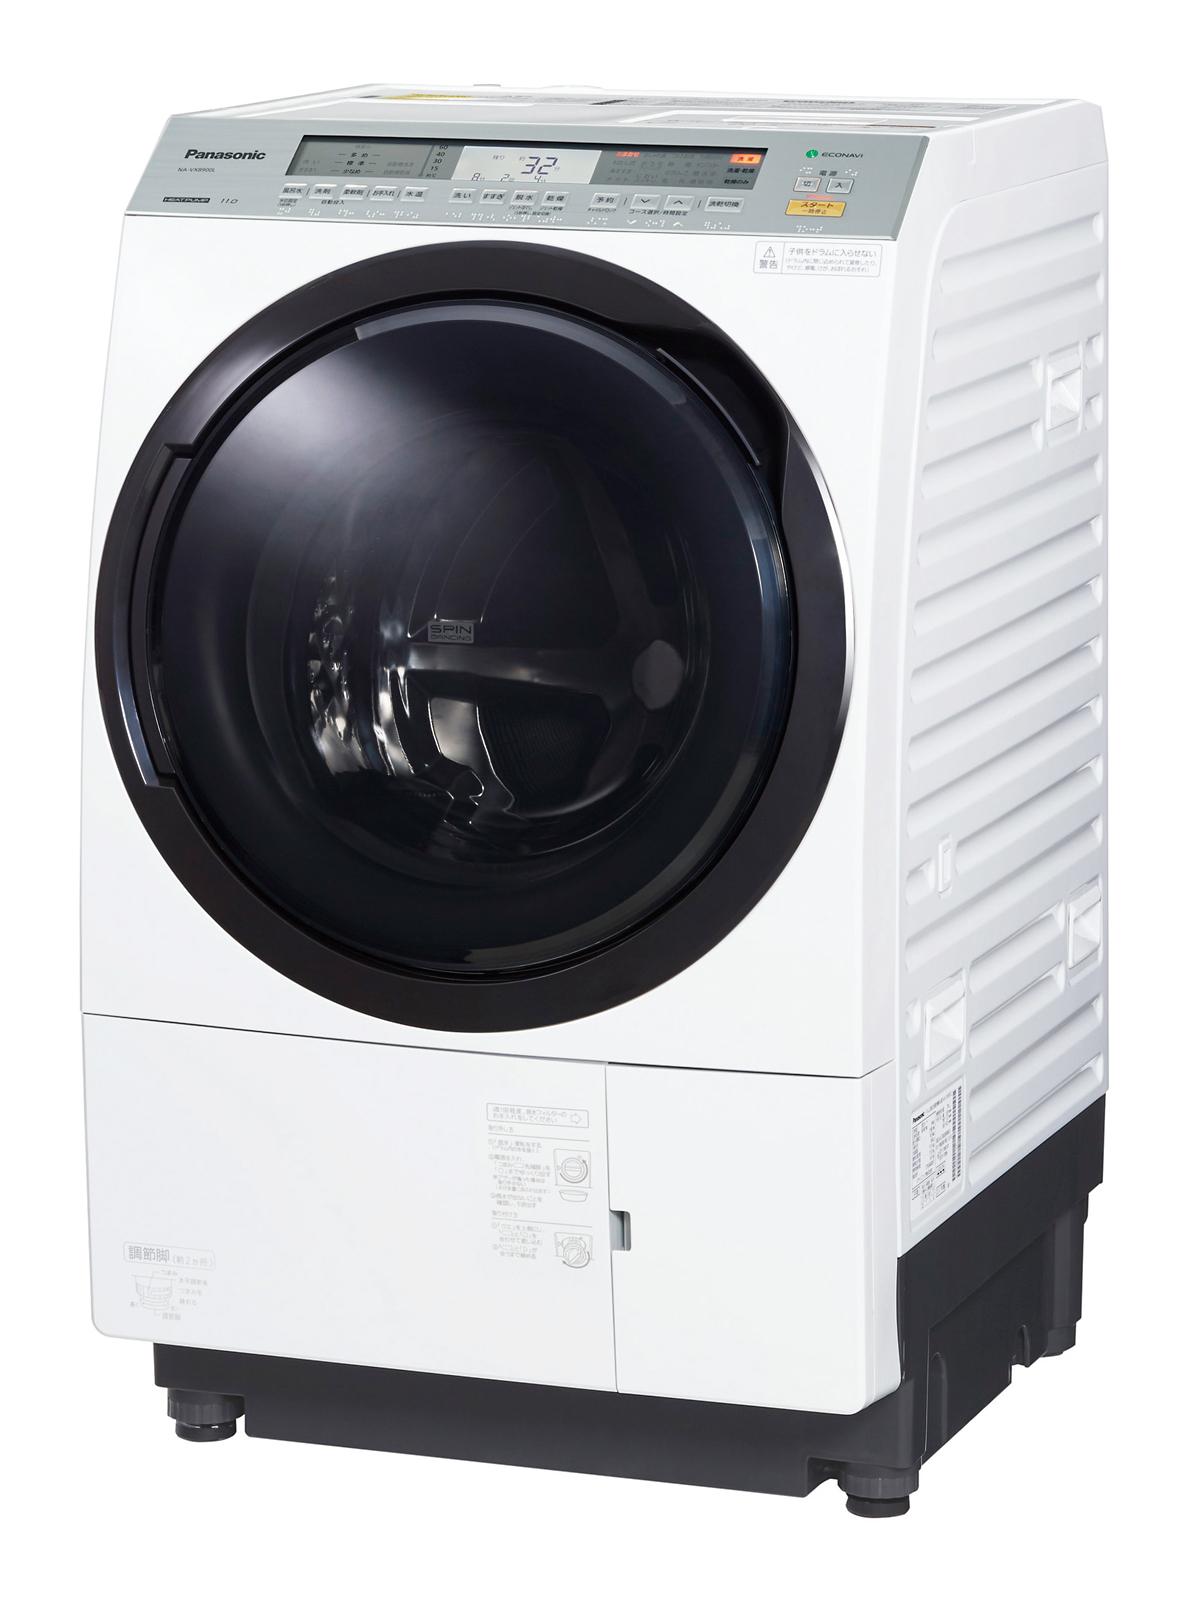 パナソニック ななめドラム洗濯乾燥機 NA-VX8900L -W